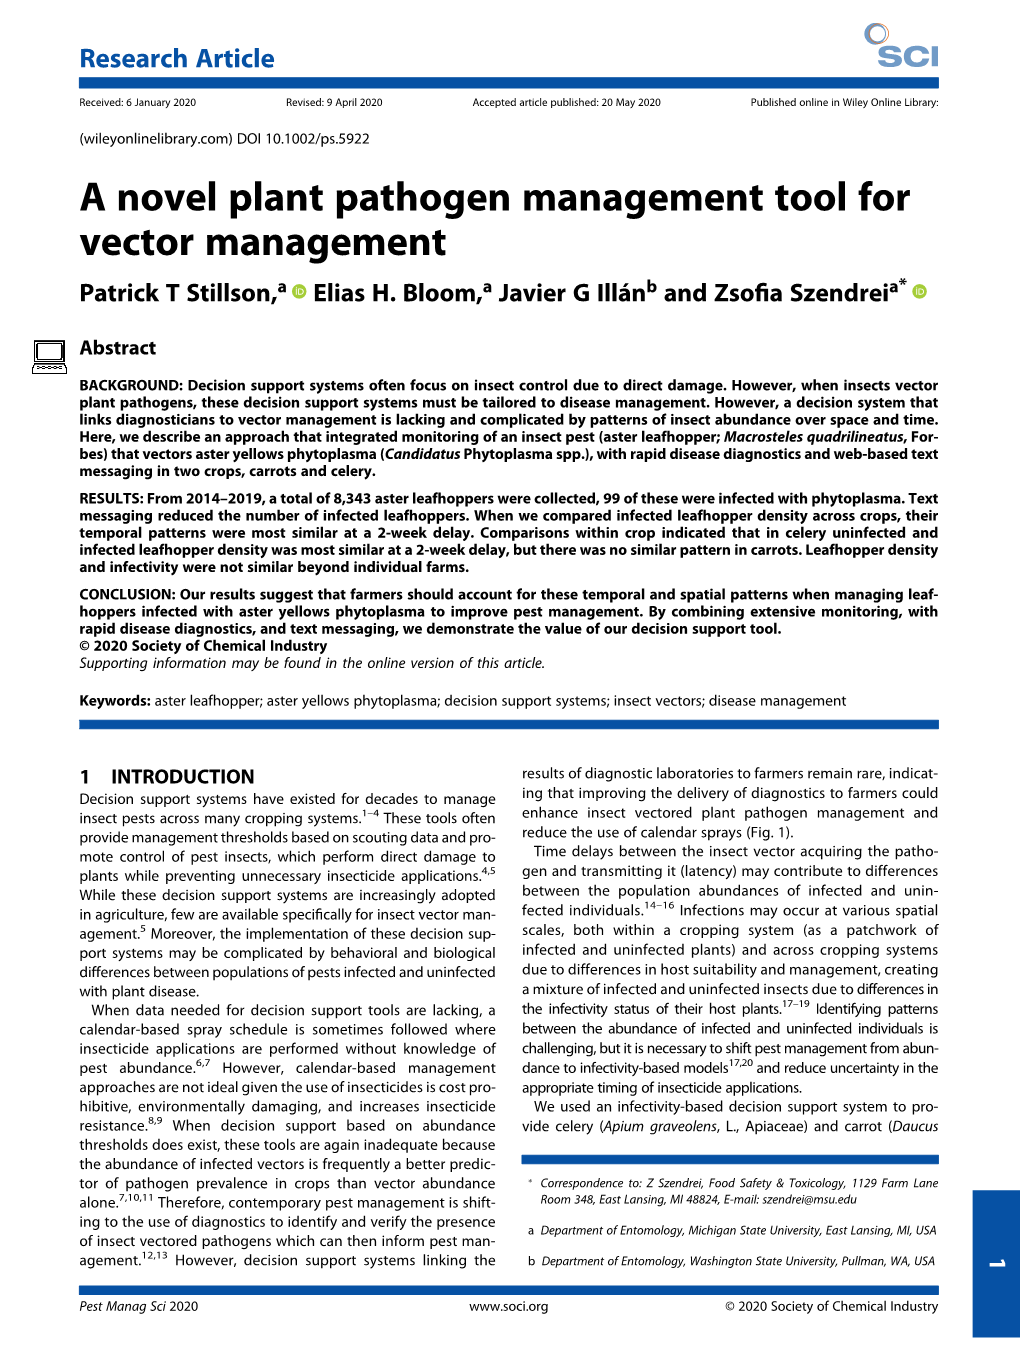 A Novel Plant Pathogen Management Tool for Vector Management Patrick T Stillson,A Elias H